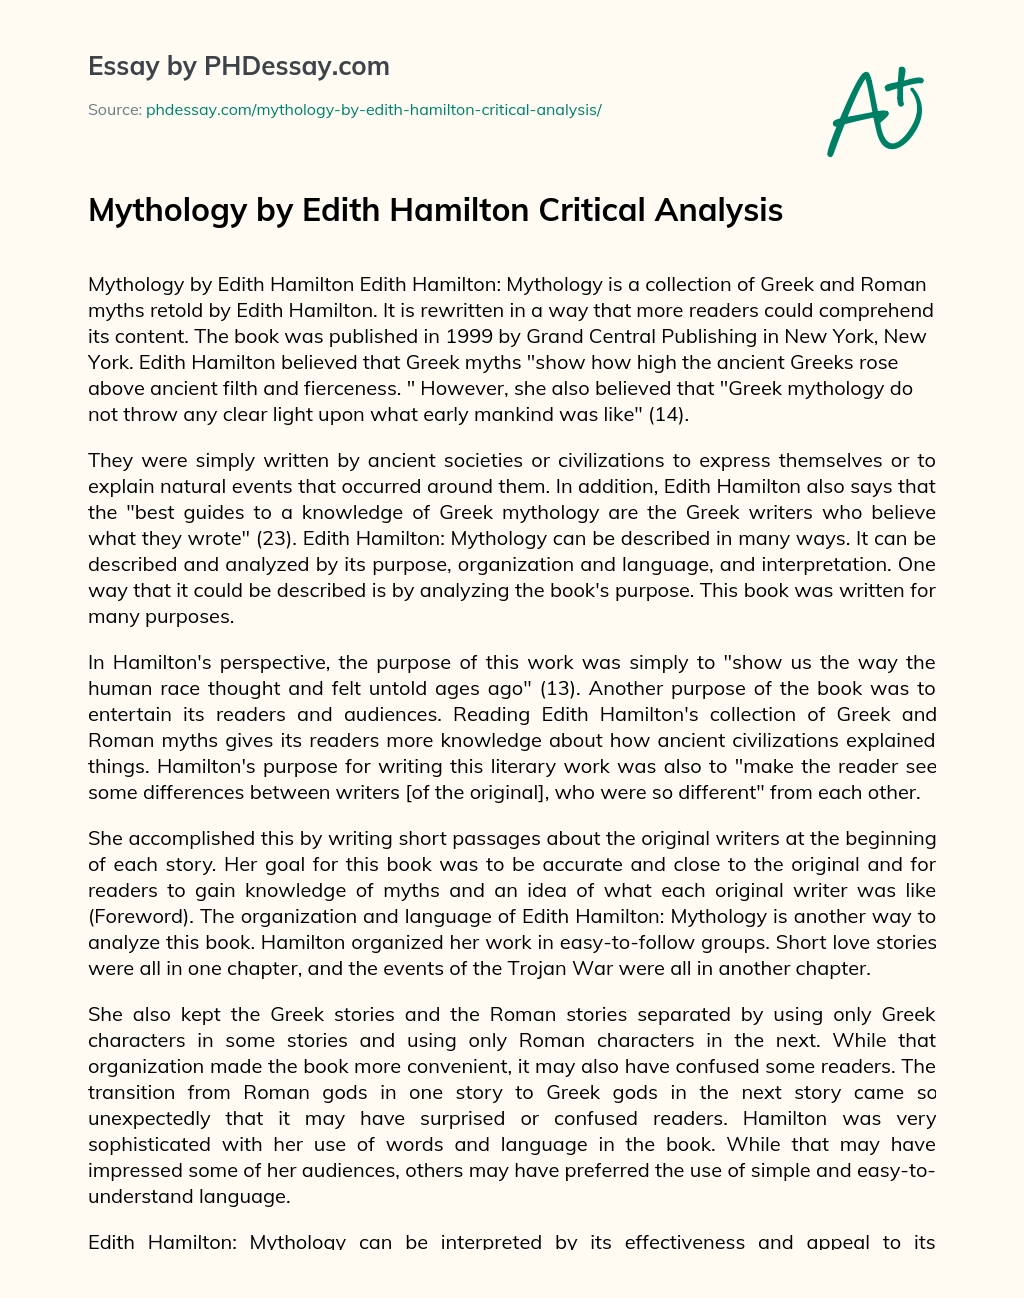 Mythology by Edith Hamilton Critical Analysis essay